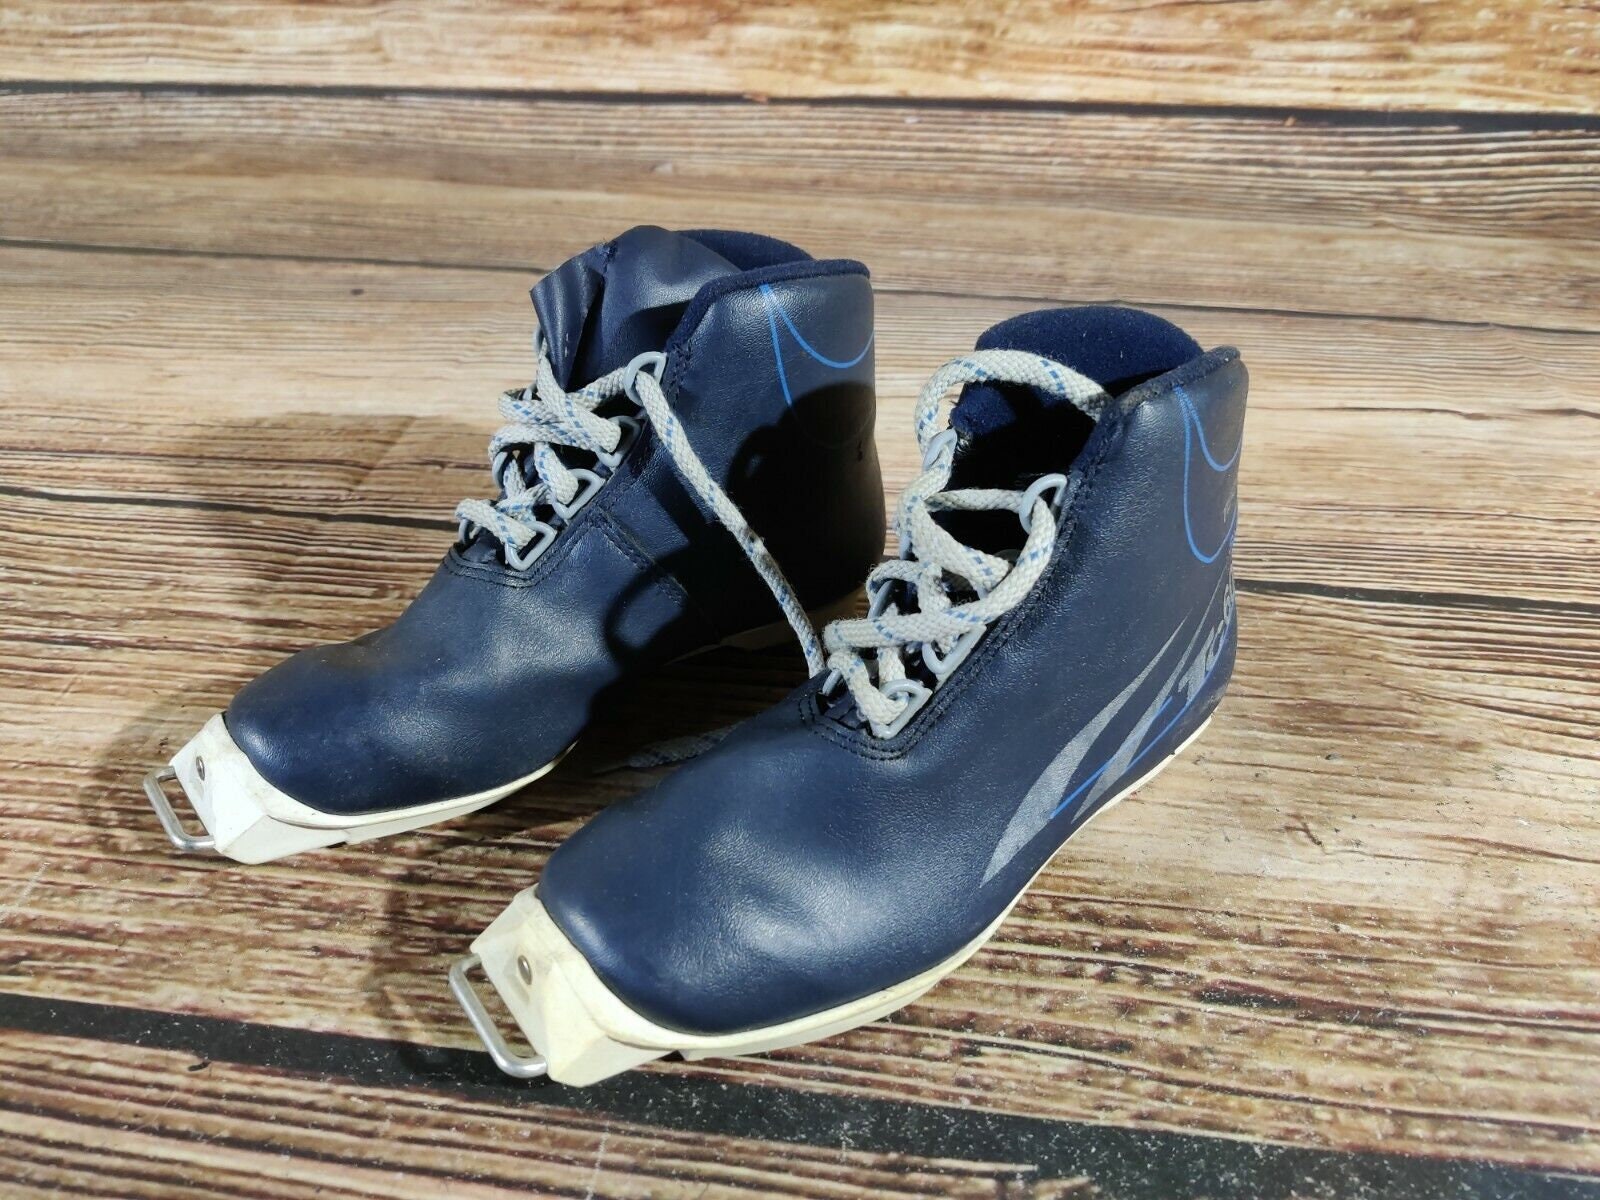 TECNO TC60 Langlaufschoenen Maat EU35 US3 voor SNS Oude Bindingen Schoenen Jongensschoenen Laarzen 